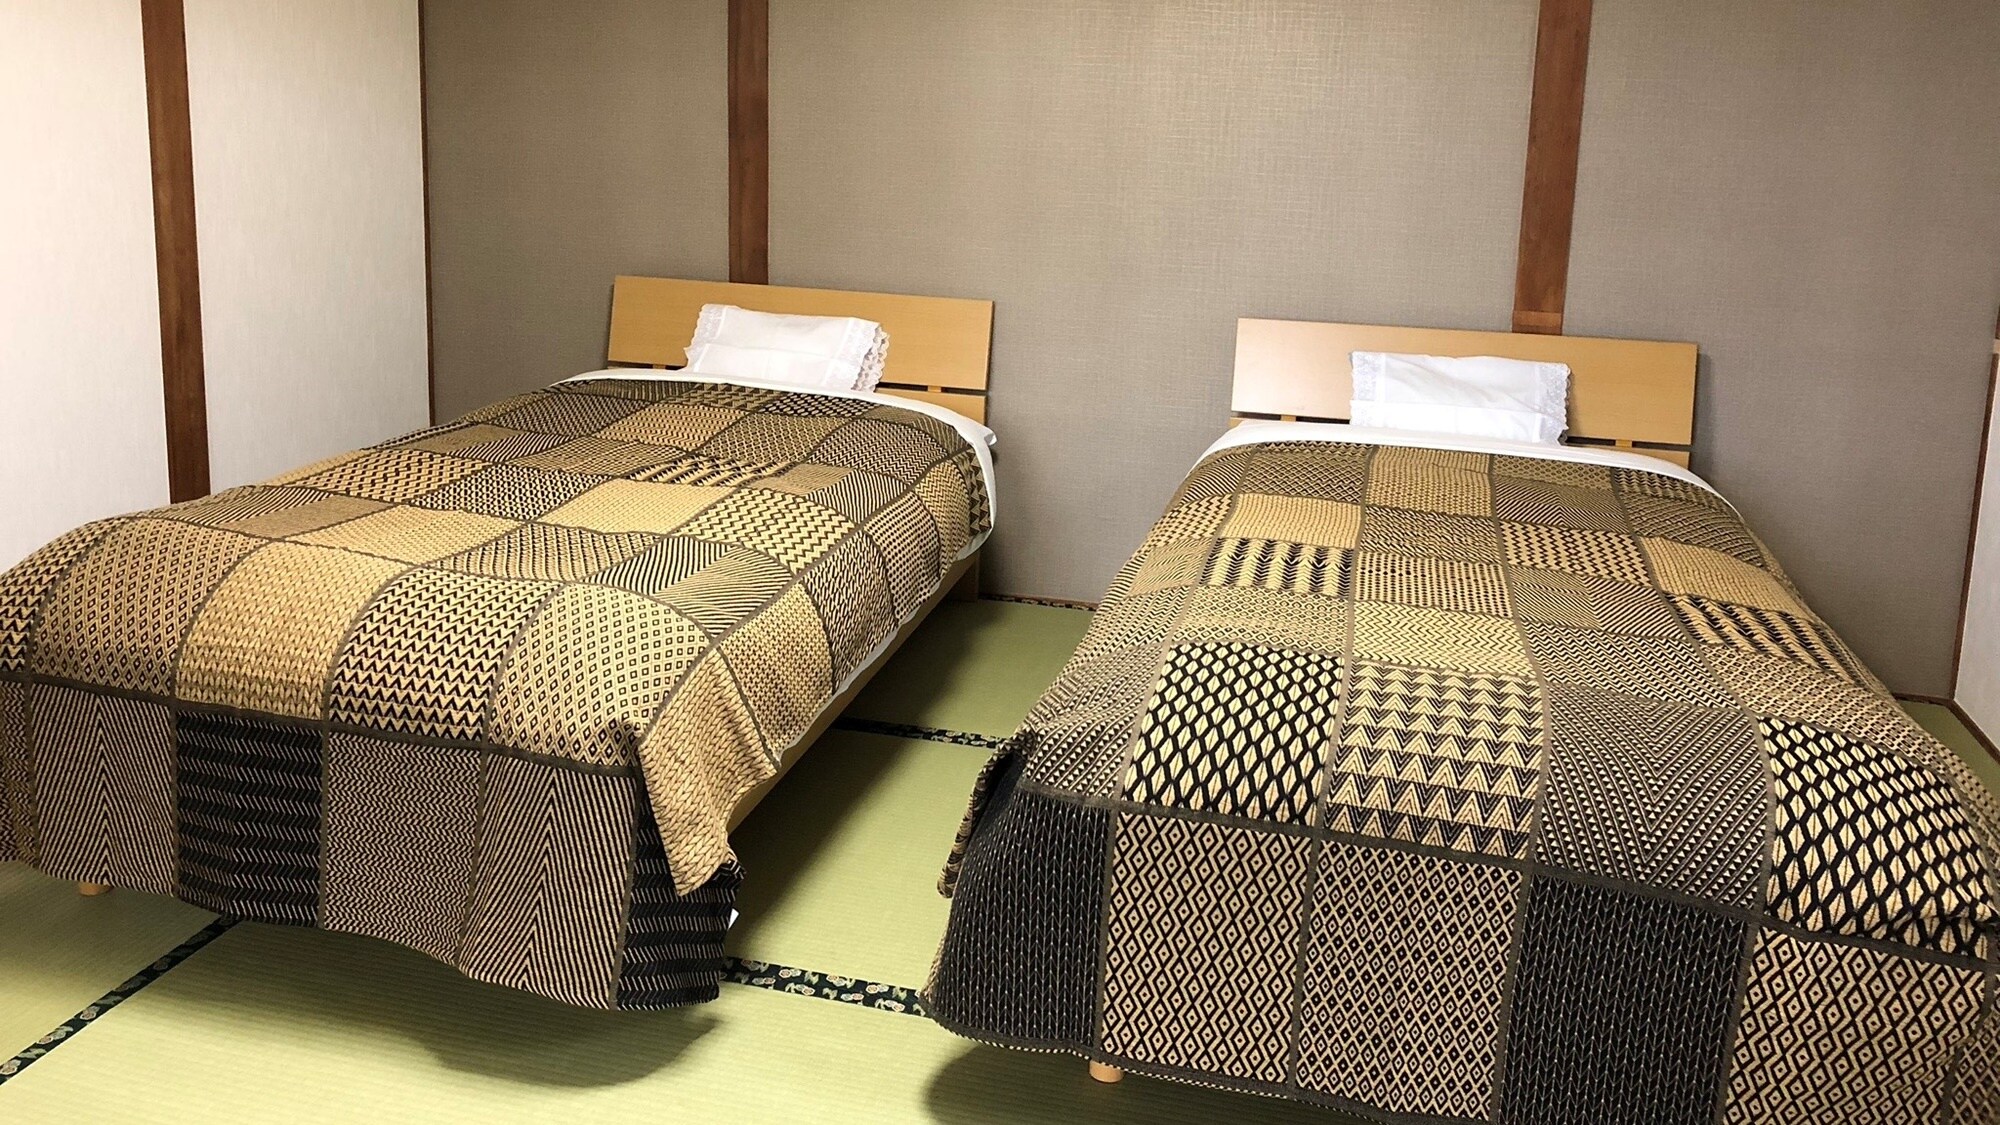 【客房示例】日式房間14張榻榻米。我們將為第三人及以後的人準備床墊。